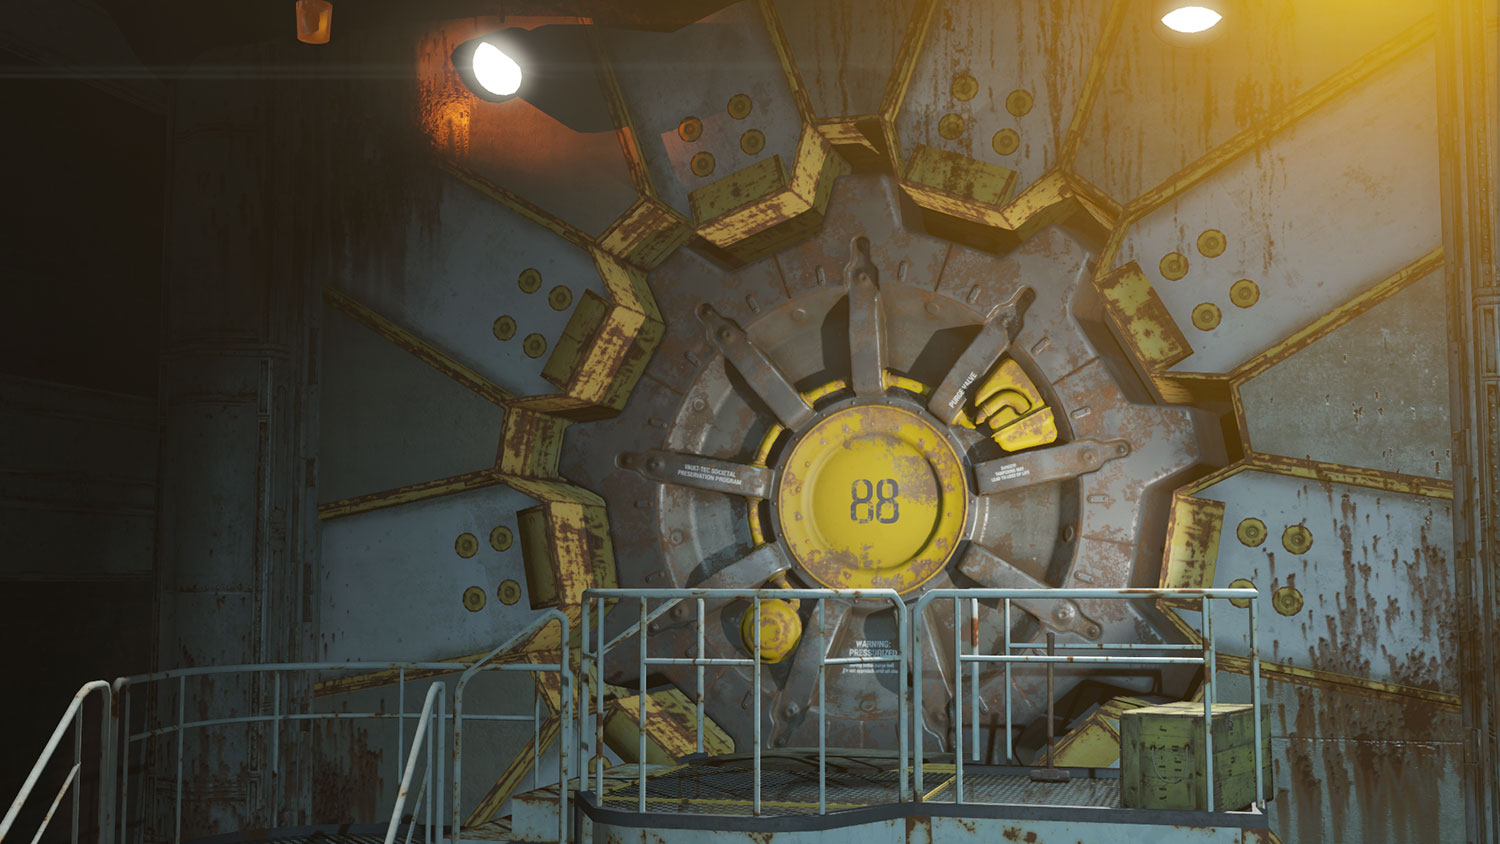 Fallout 4 DLC: Vault-Tec Workshop